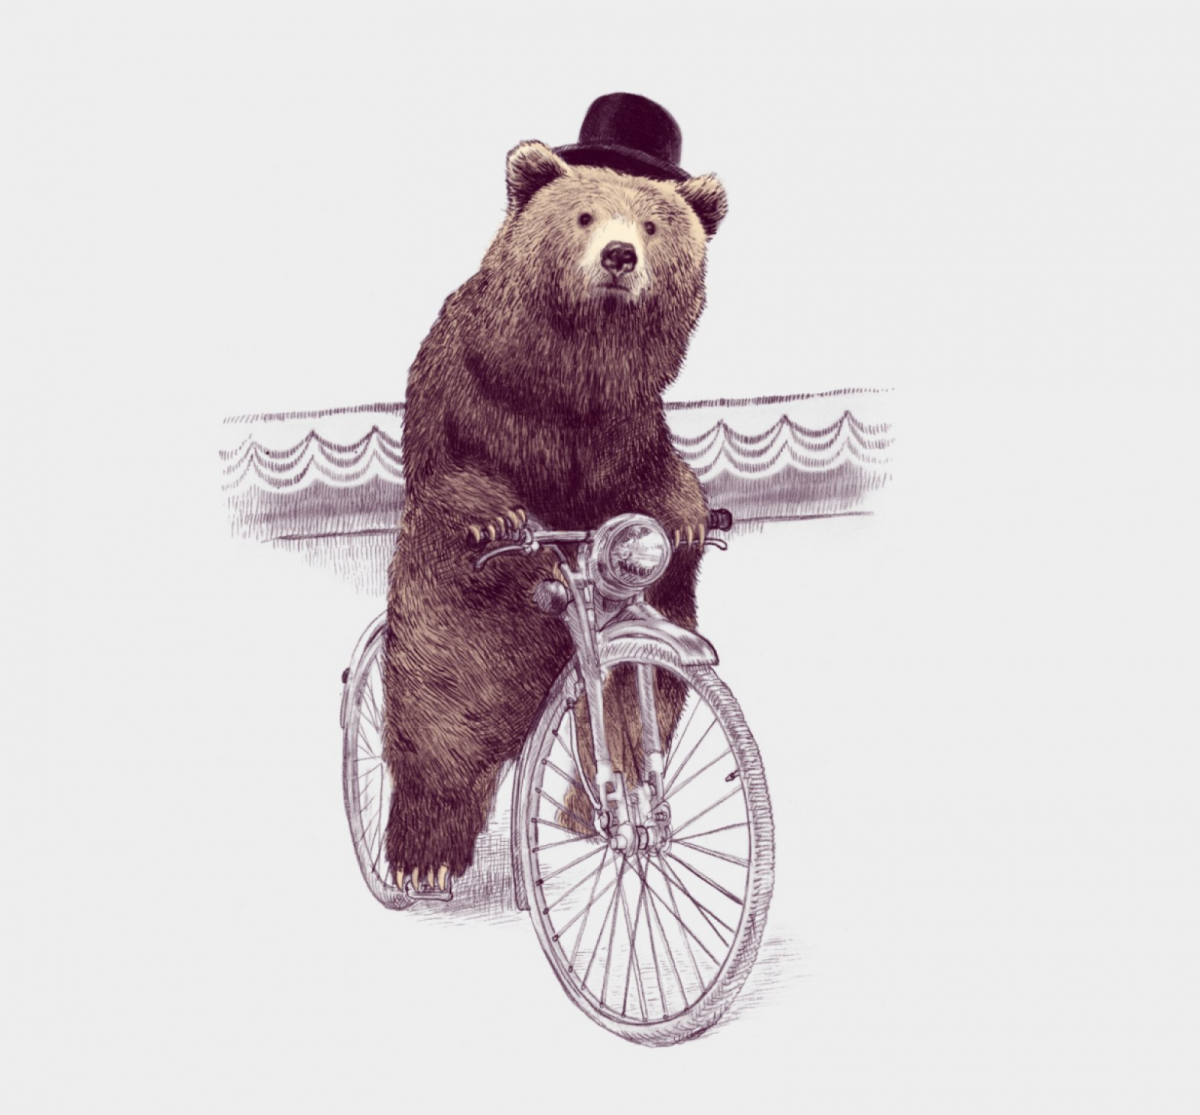 Медведь за рулем